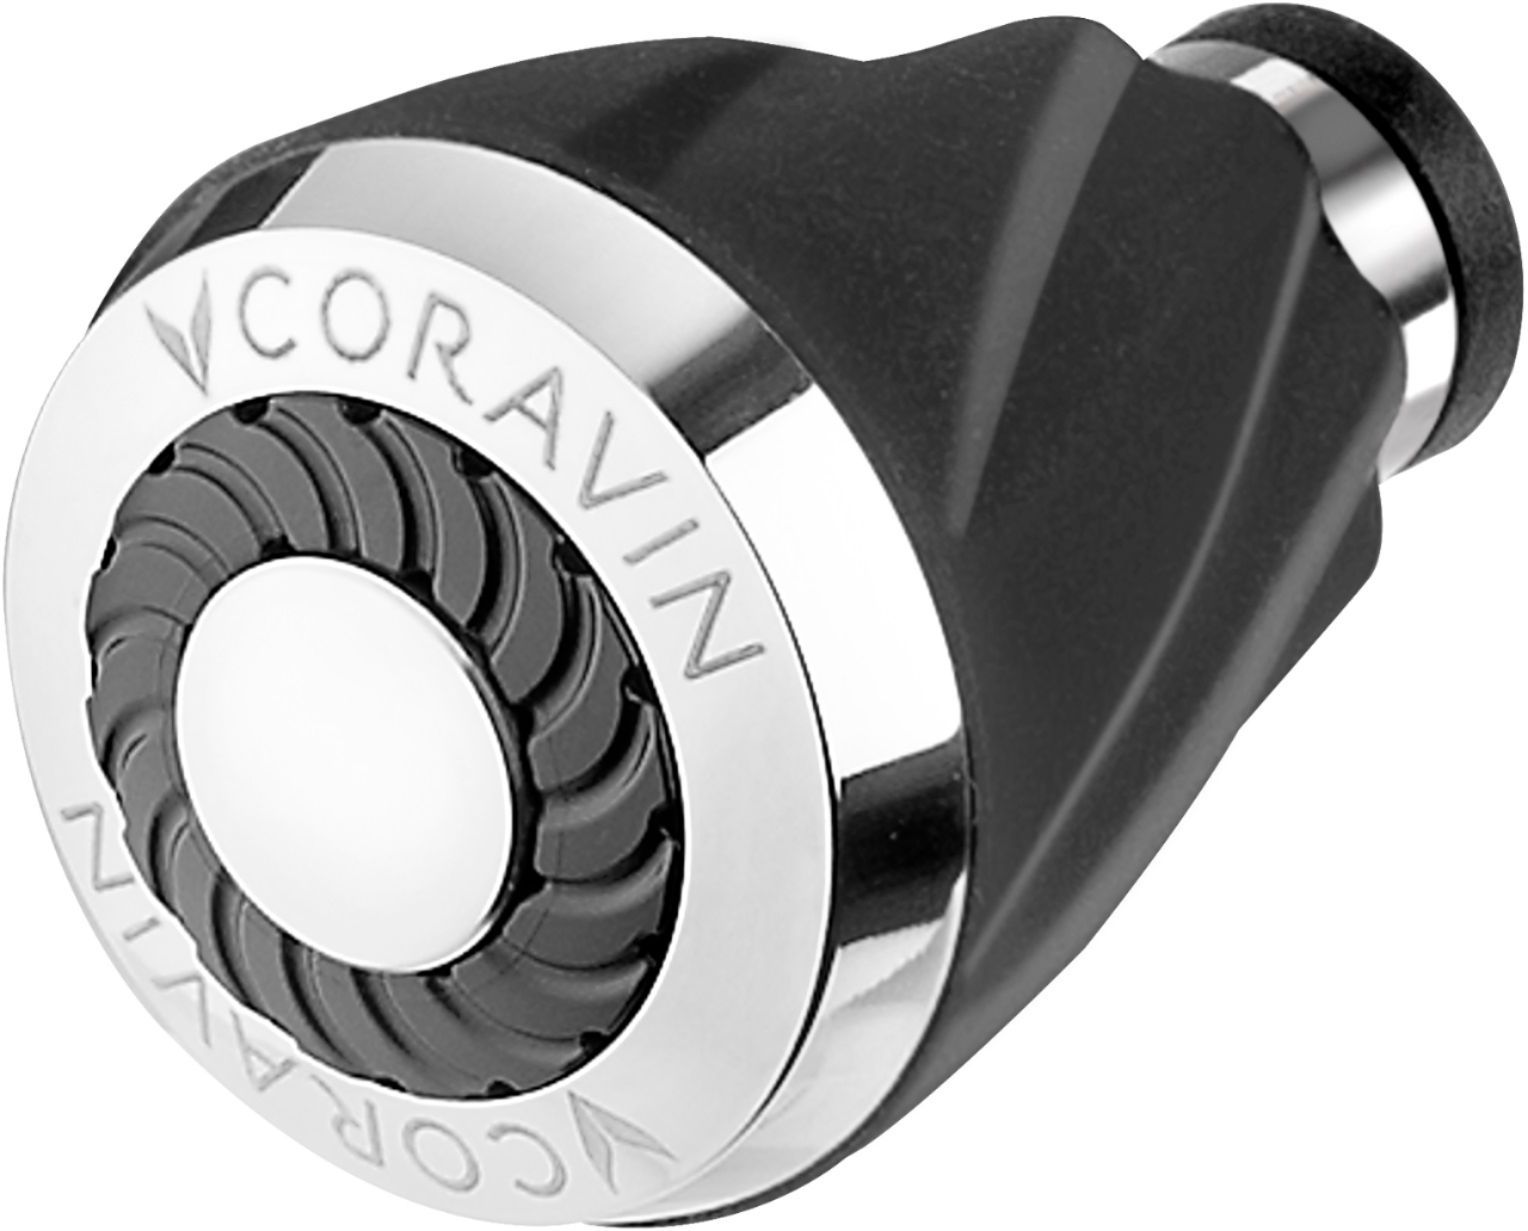 Coravin Aerator Black and Silver 802013 - Best Buy | Best Buy U.S.